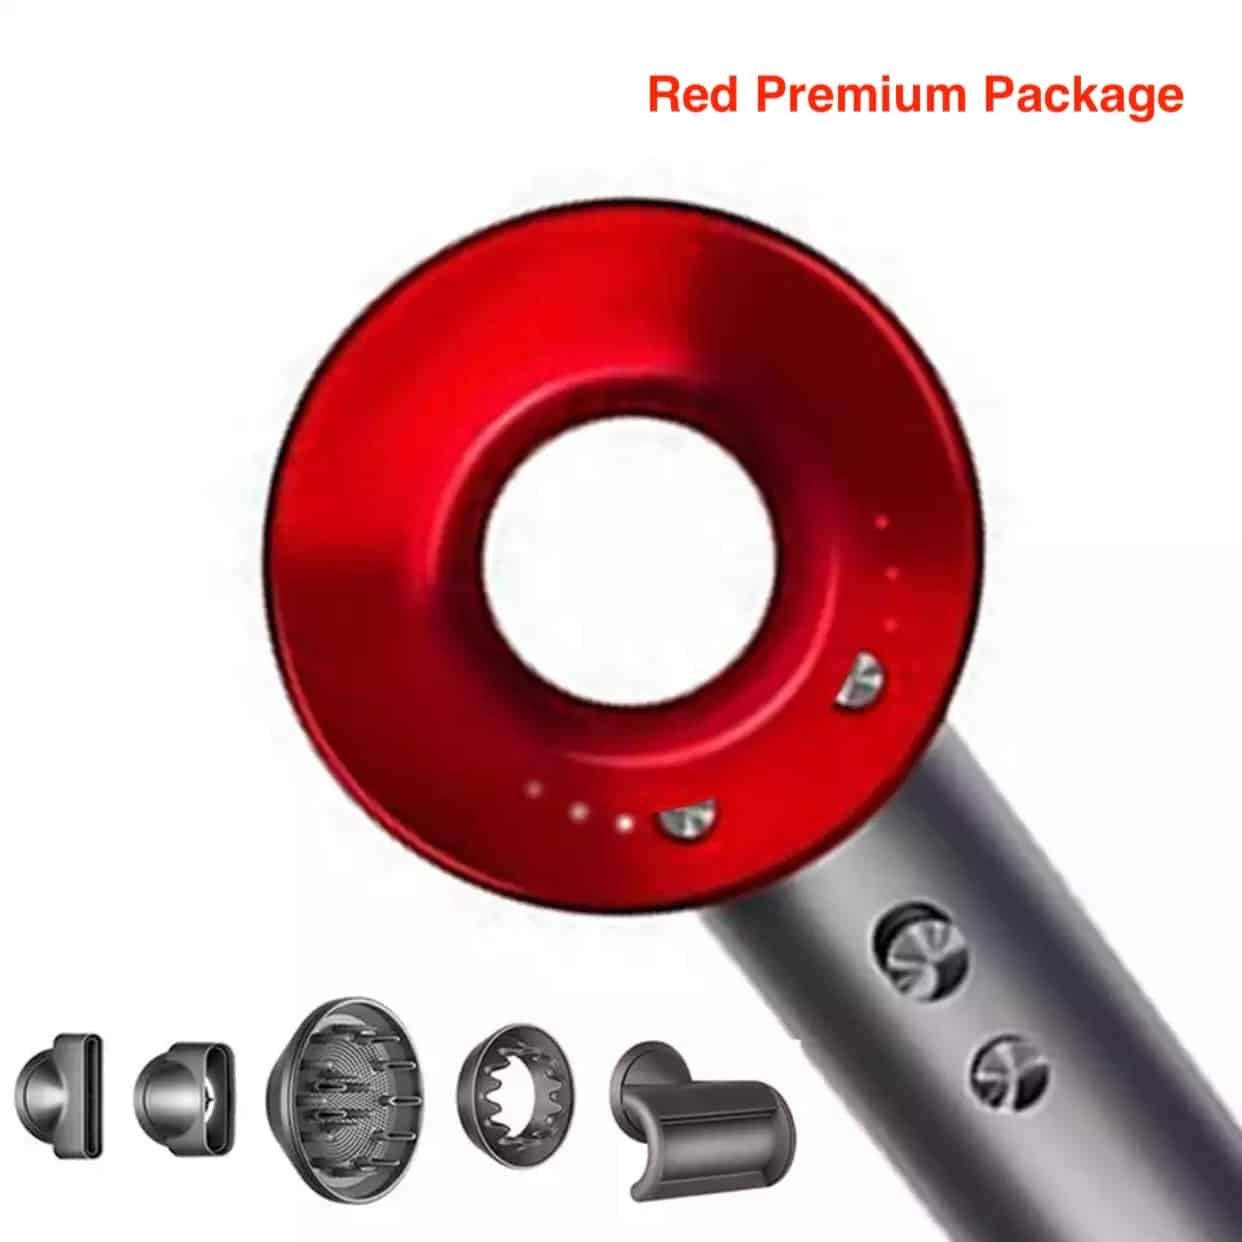 Red Premium